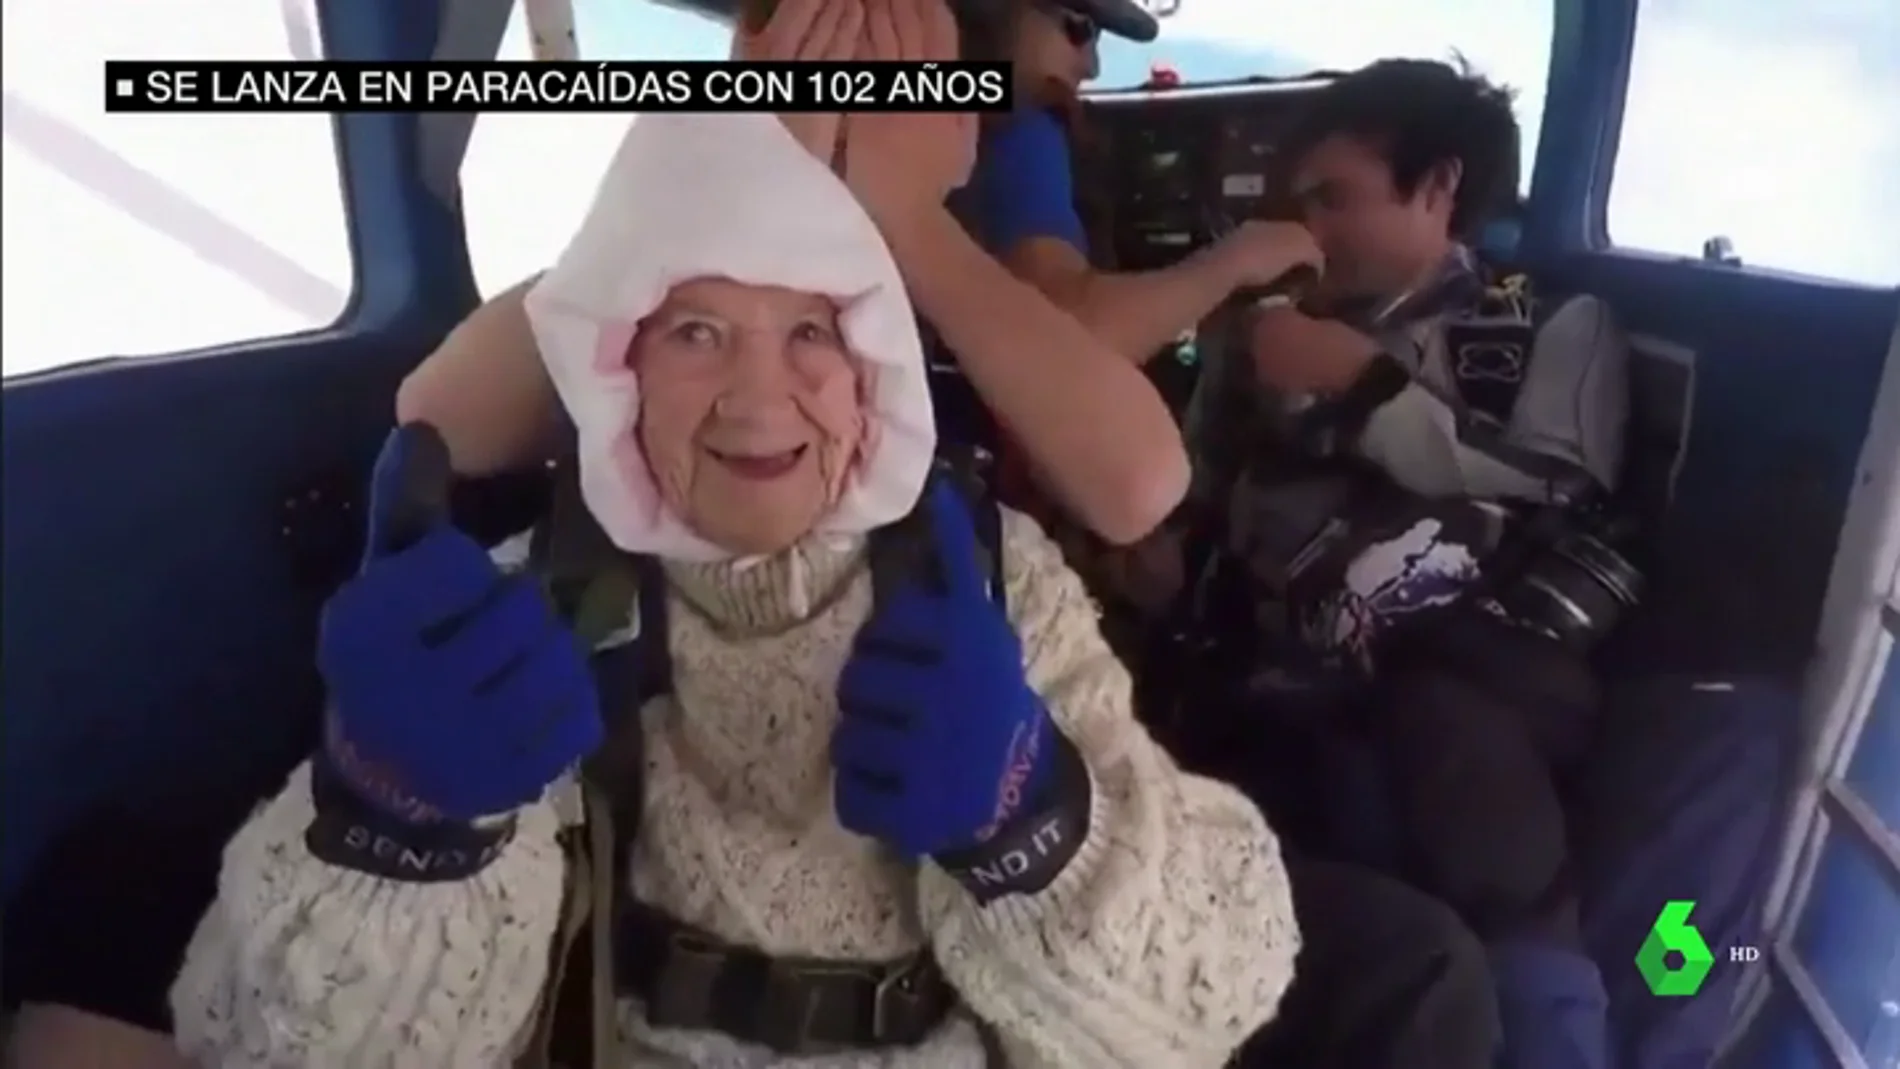 El salto solidario de una paracaidista de 102 años